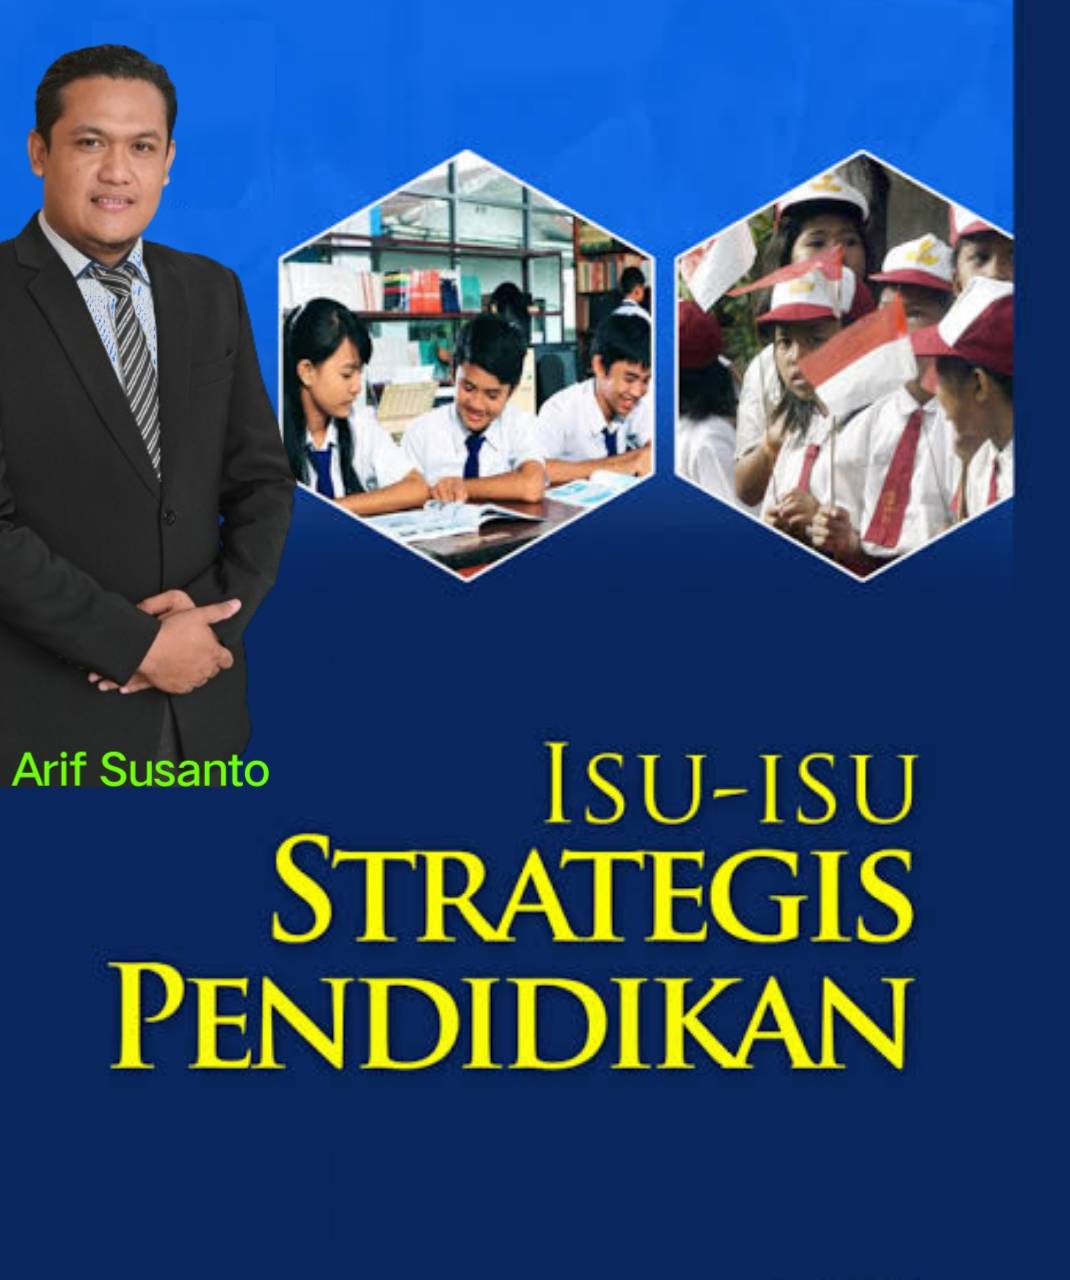 Isu-isu Strategis Pendidikan di Indonesia dan Solusinya